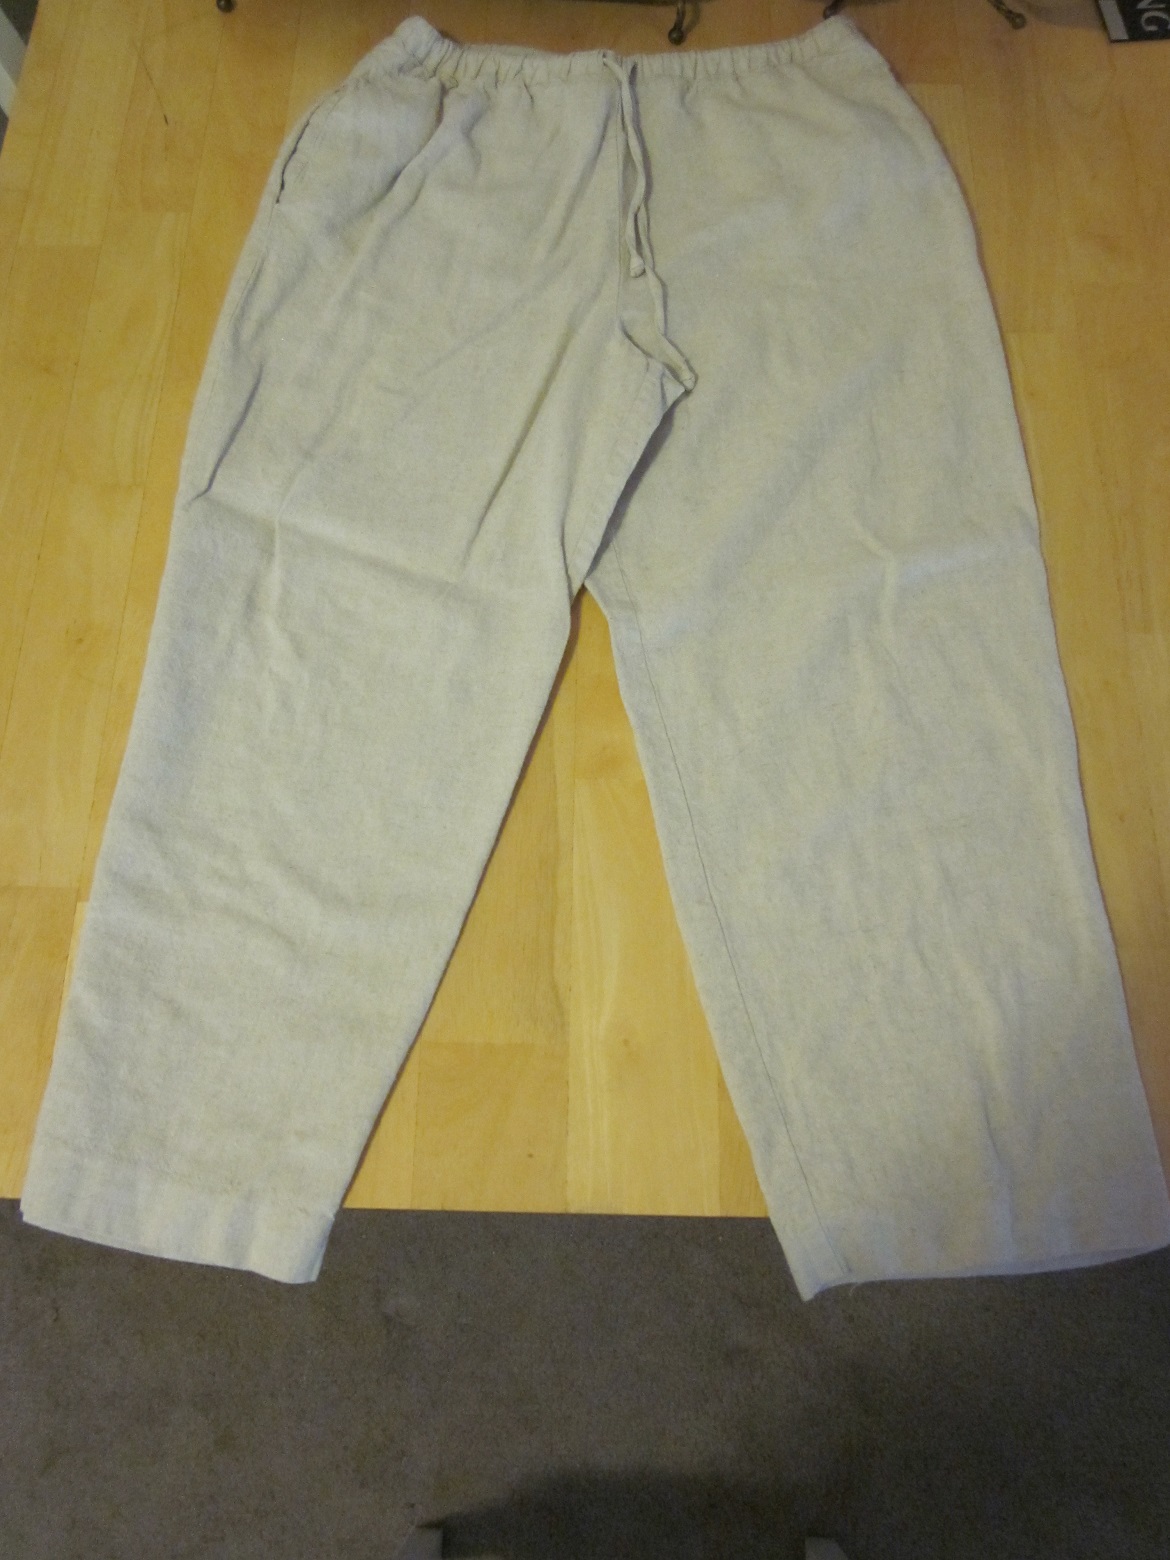 Coldwater Creek Khaki Pants - Size PM